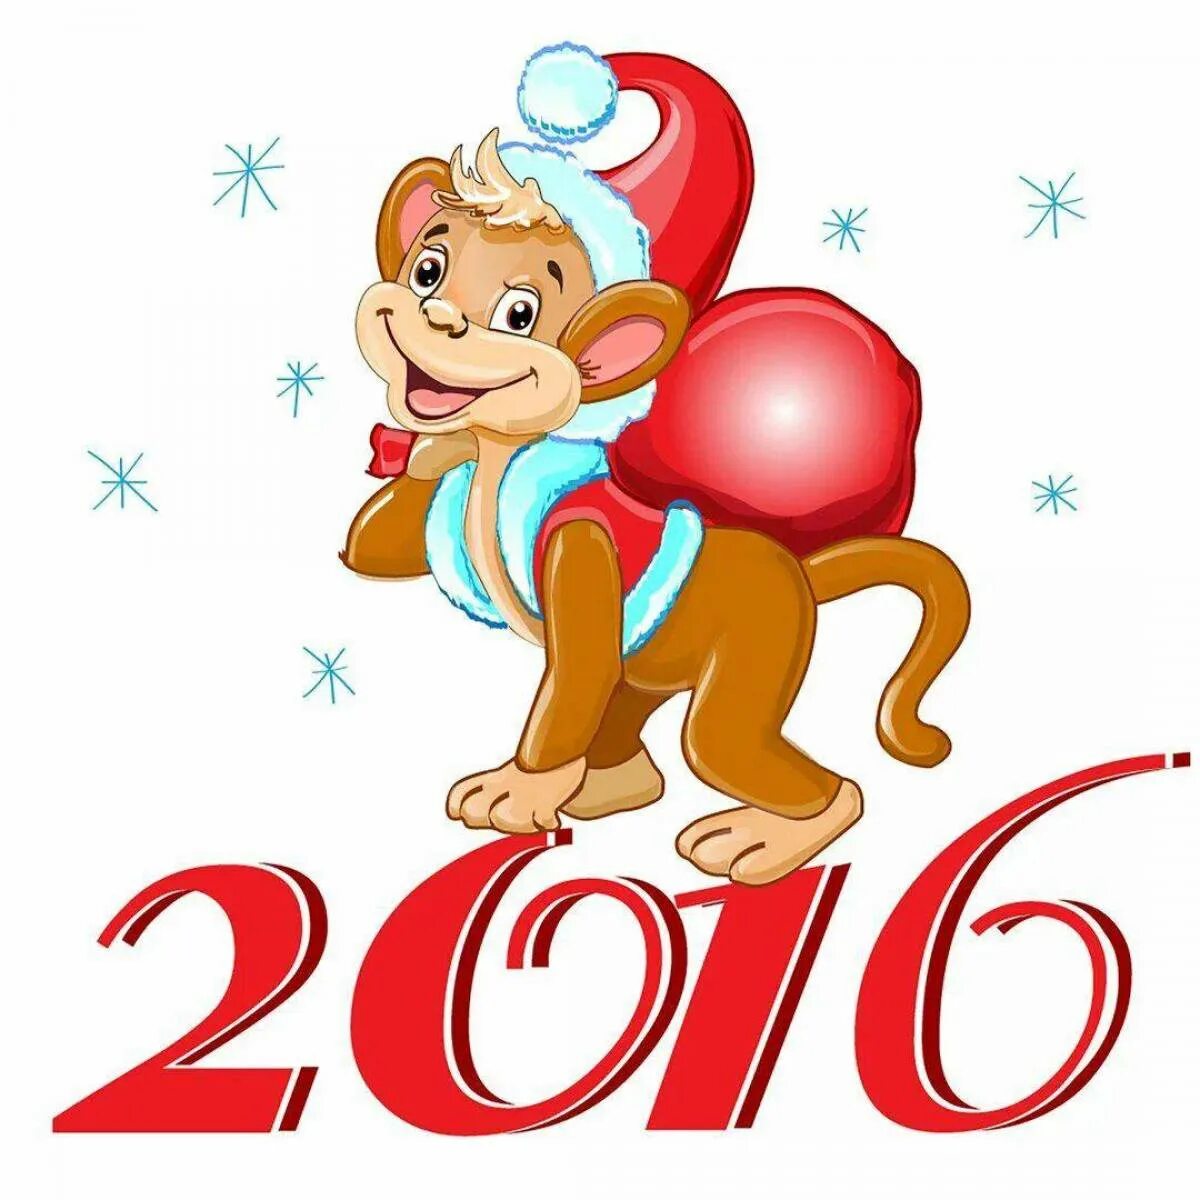 Показать символ года. Обезьяна символ 2016 года. Символы нового года. Новогодние обезьянки 2016. Открытки новогодние с 2016 годом.